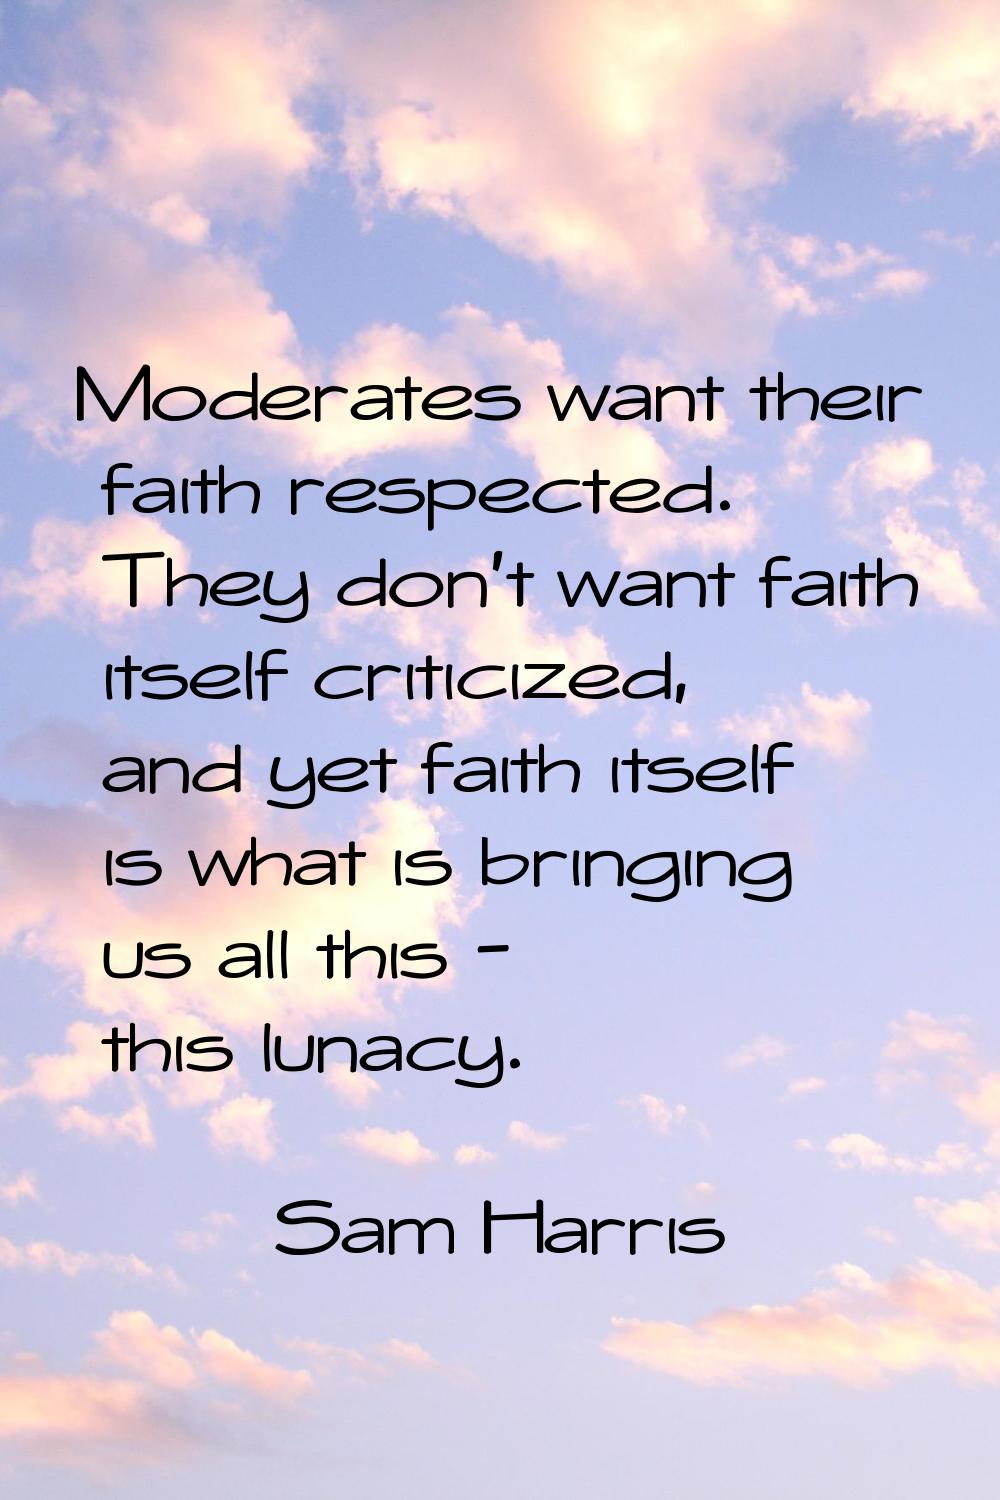 Moderates want their faith respected. They don't want faith itself criticized, and yet faith itself